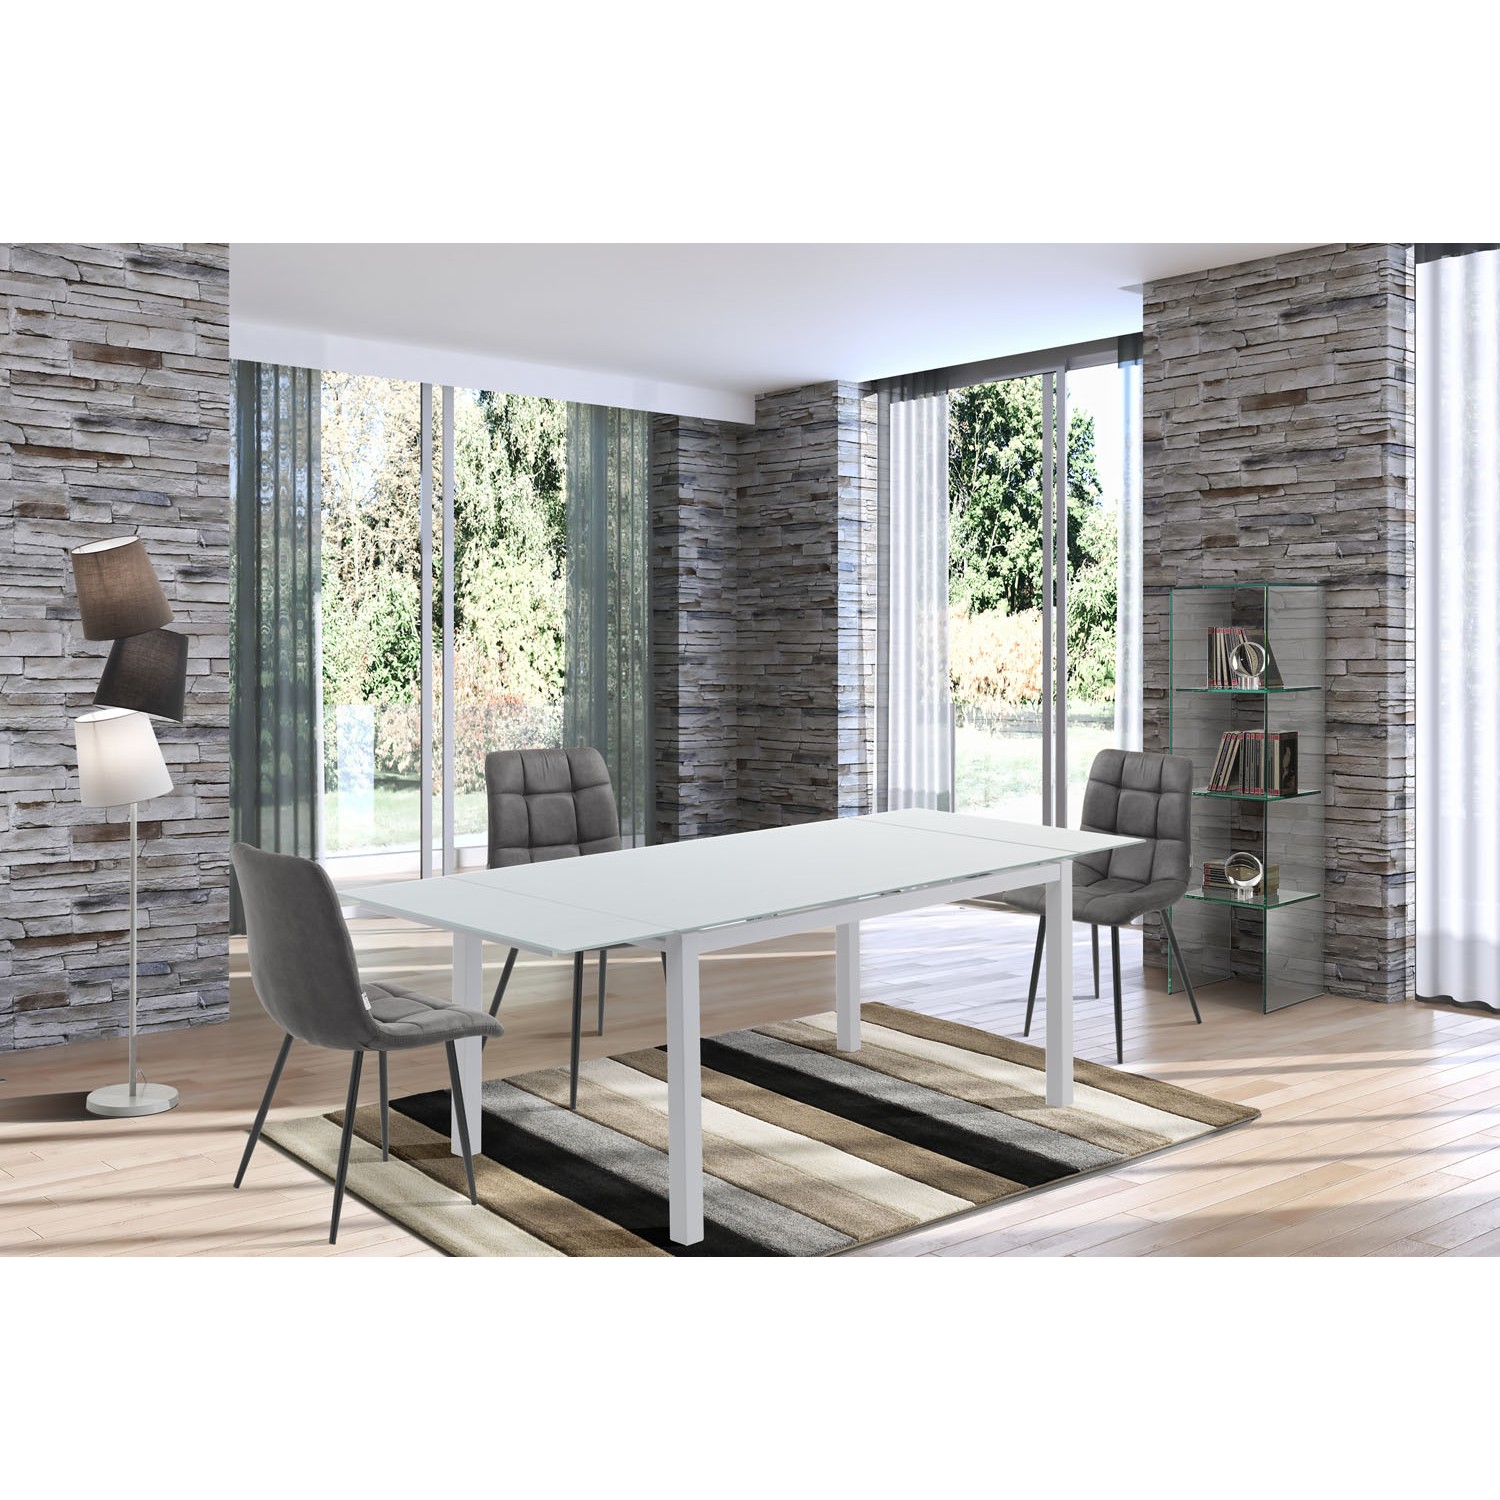 Tomasucci tavolo allungabile NEW DAILY 140 - WHITE - struttura realizzata in metallo verniciato bianco opaco 